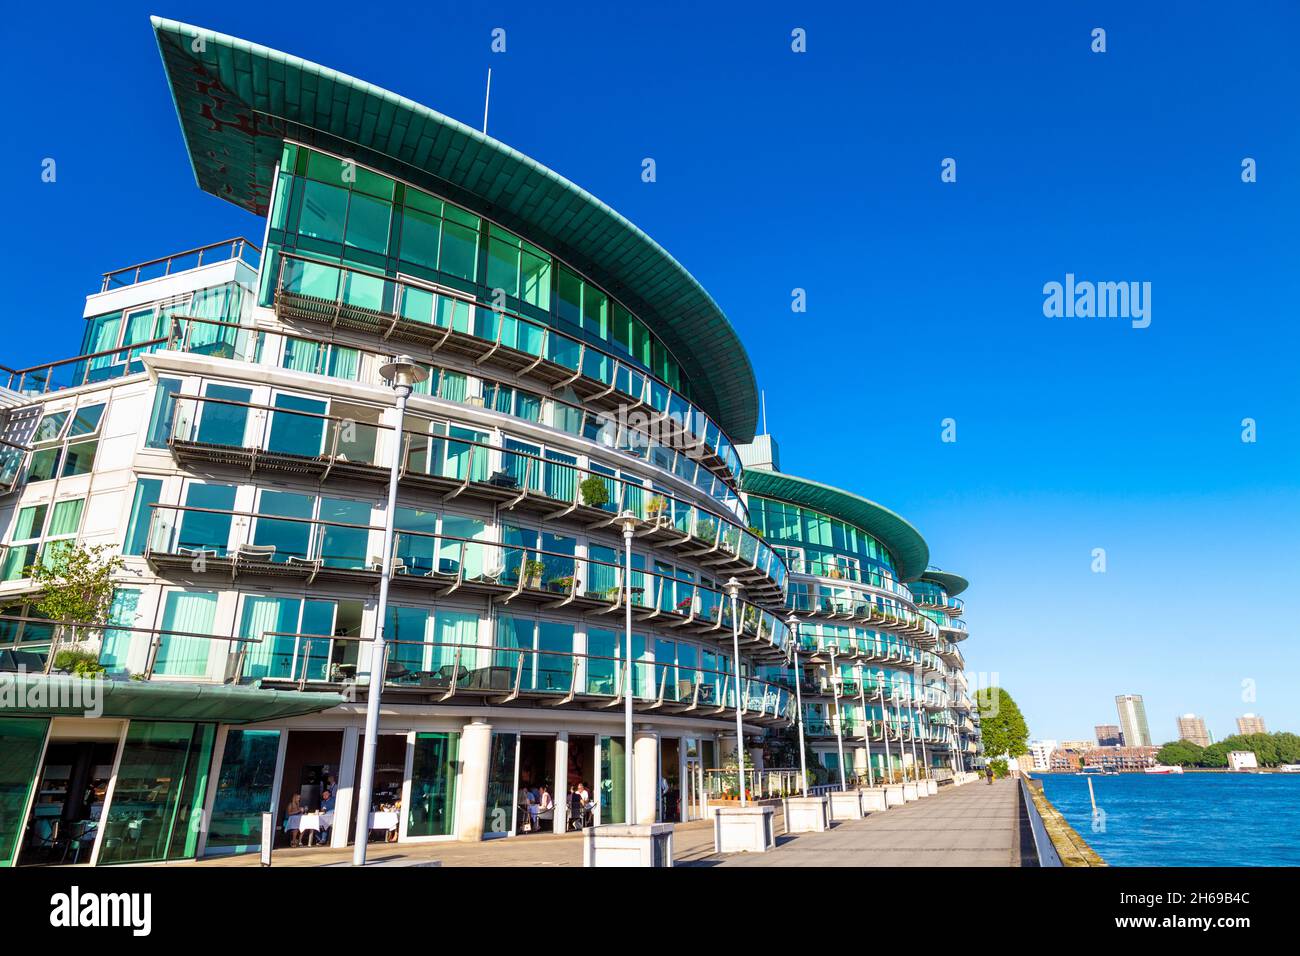 Bâtiments de Cinnabar Wharf à Wapping, Londres, Royaume-Uni Banque D'Images